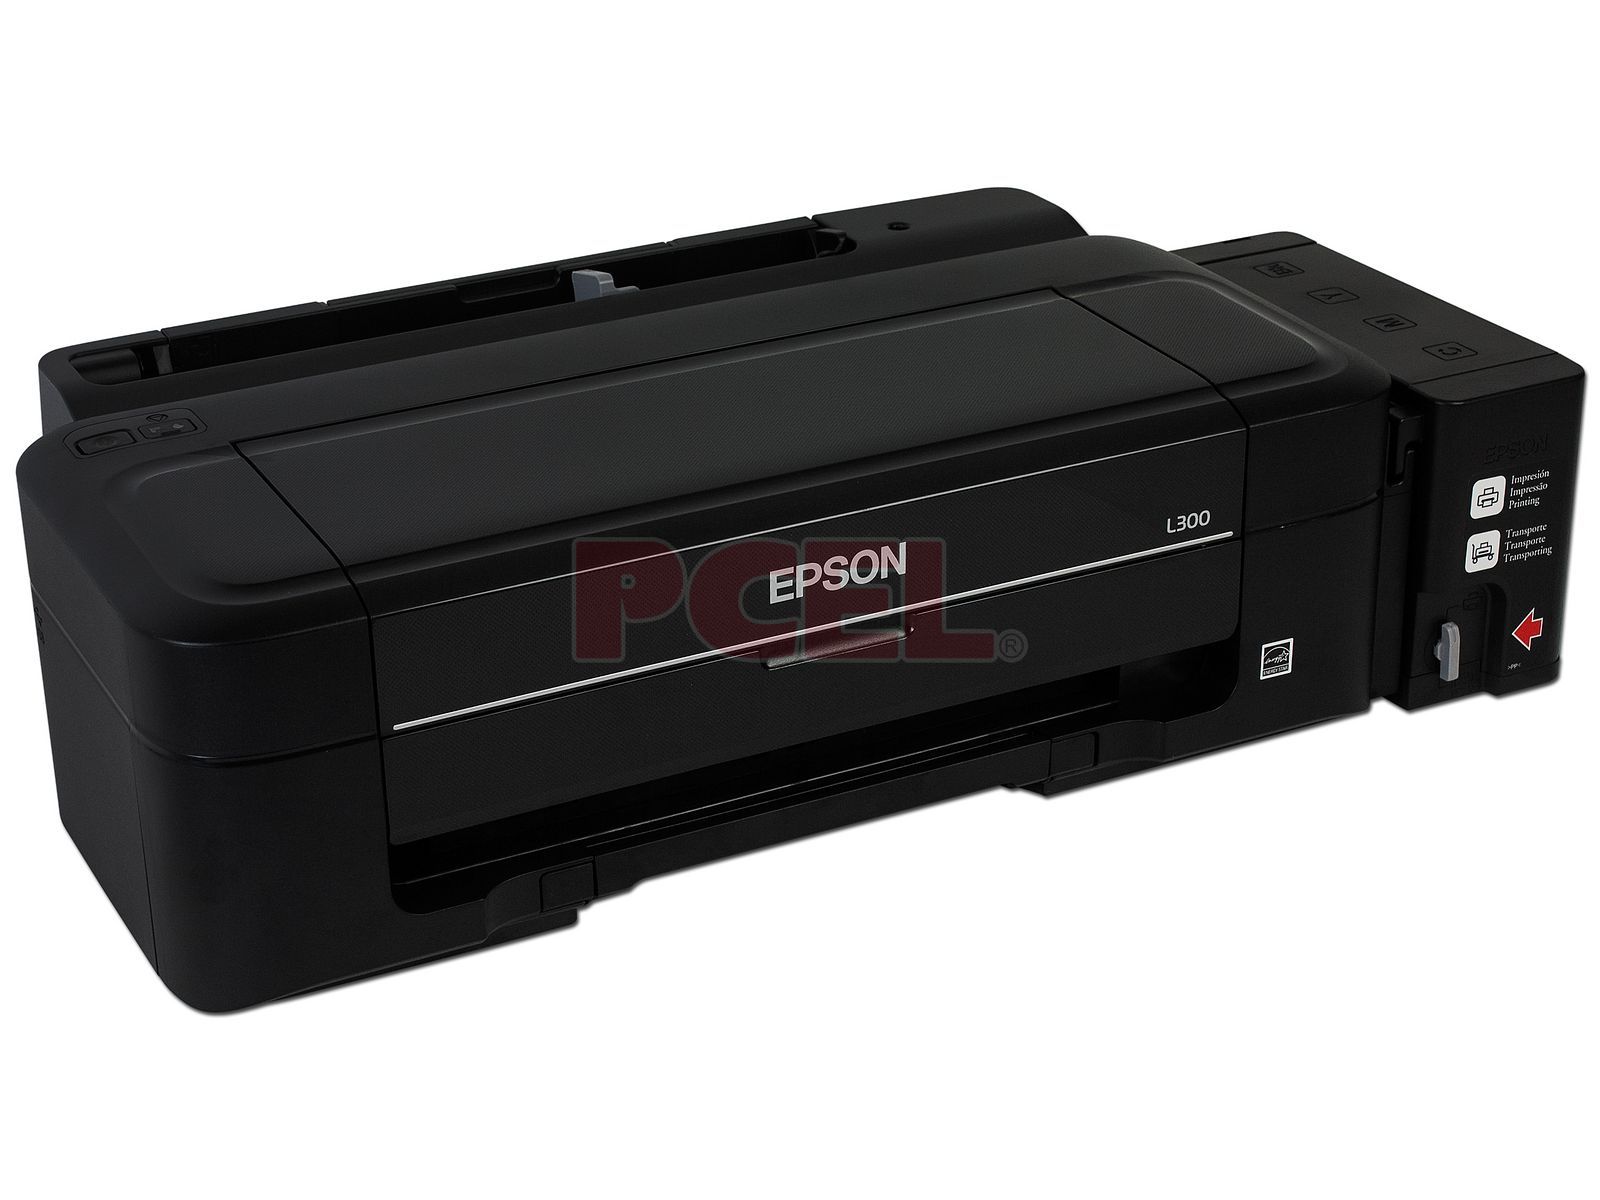 Impresora de Inyección a Color Epson EcoTank L300, Resolución hasta 5760 x 1440 dpi. Sistema de Tanques de